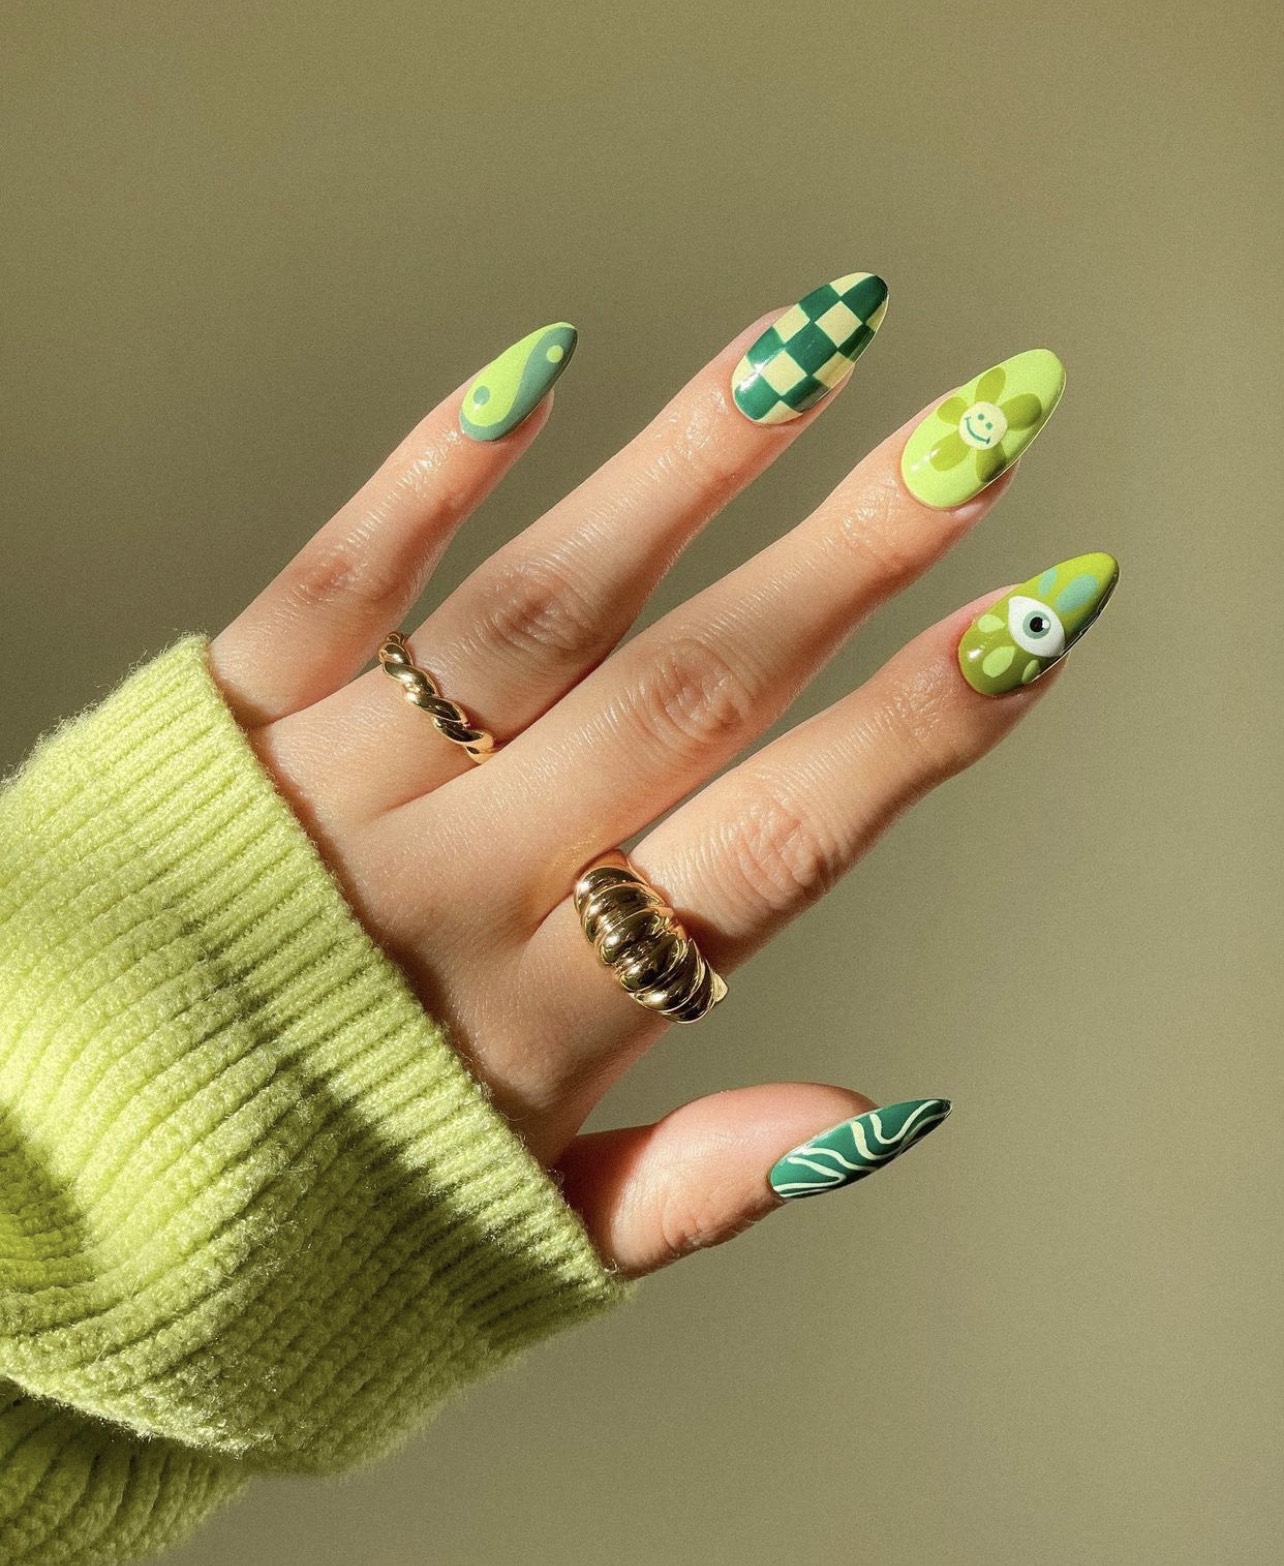 Màu sắc, nail, vui nhộn: Màu sắc cho móng tay không chỉ là để trang trí, mà còn đem lại sự vui nhộn và phong cách cho người sử dụng. Hãy xem các ảnh về nail vui nhộn và sáng tạo với nhiều màu sắc độc đáo.